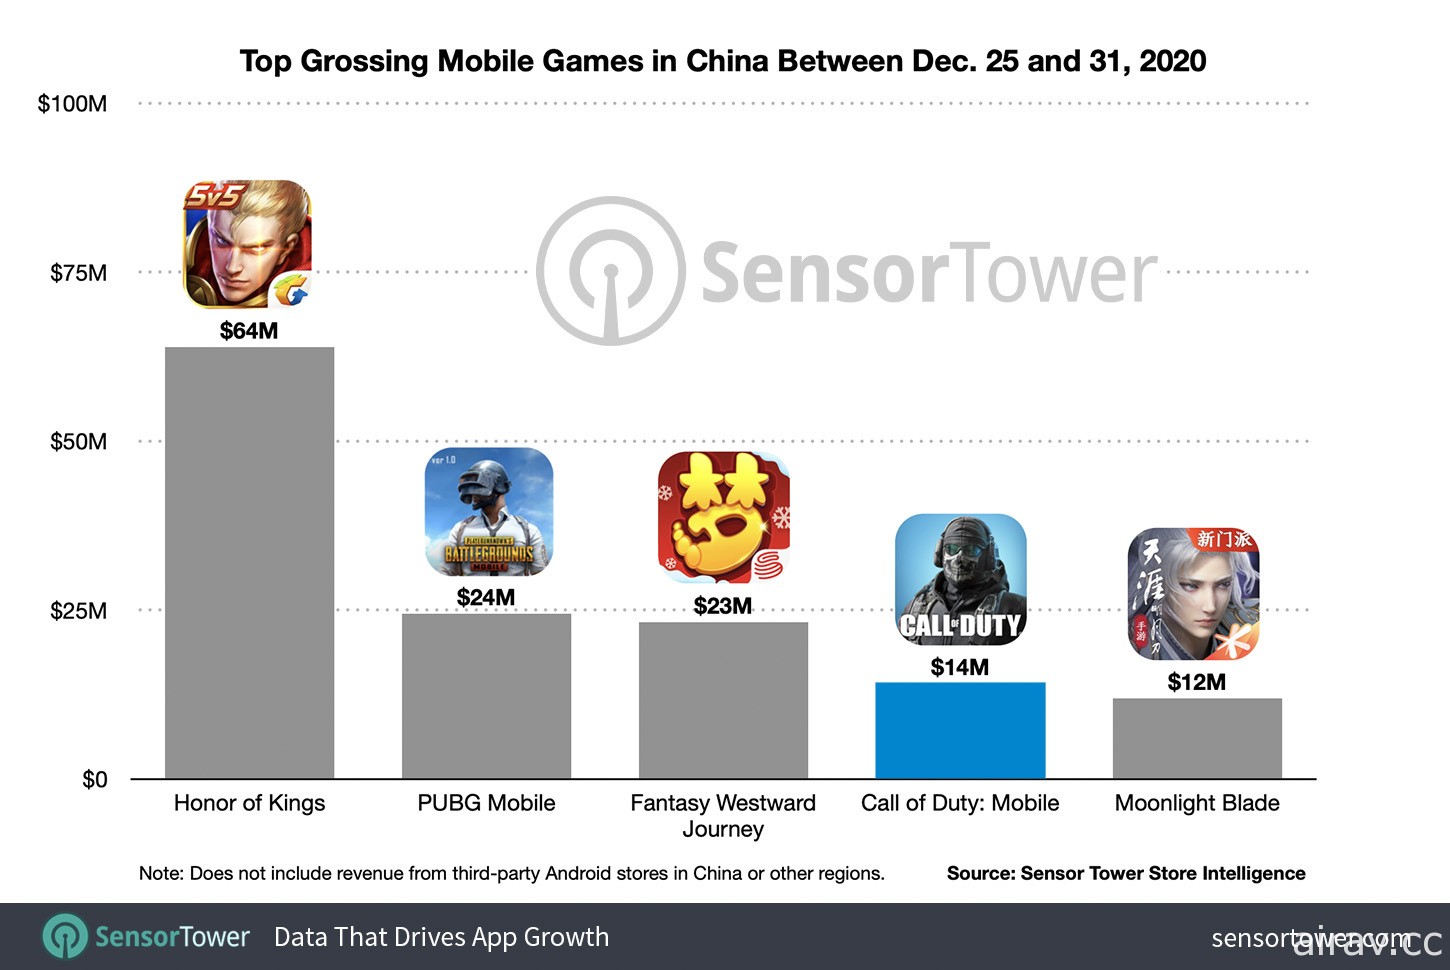 《决胜时刻 Mobile》于中国推出后首周斩获 1,400 万美元